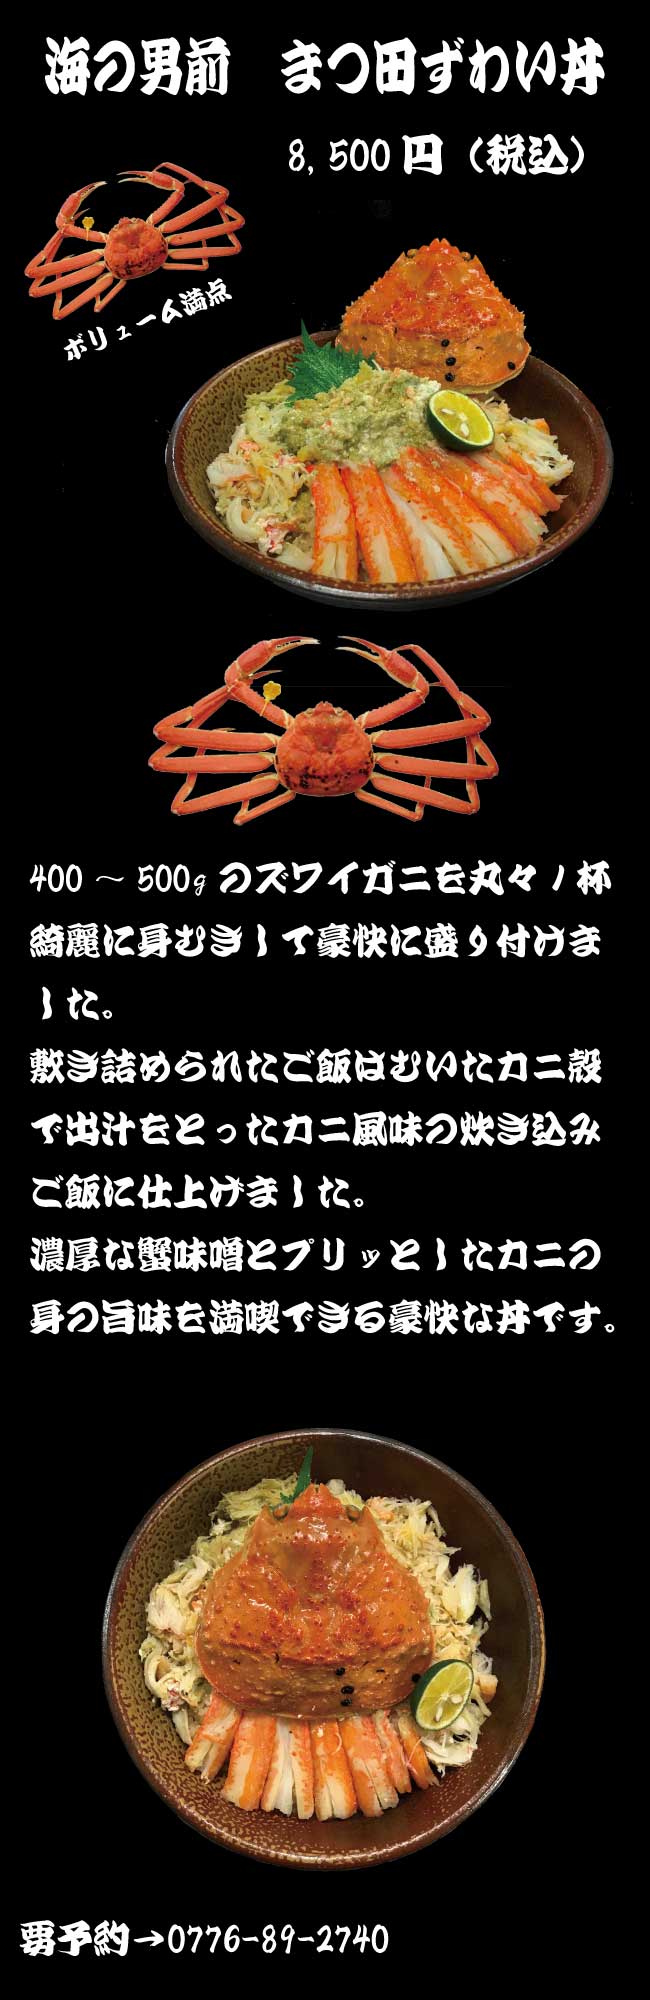 ずわい丼ランディングページ8500円訂正版.jpg